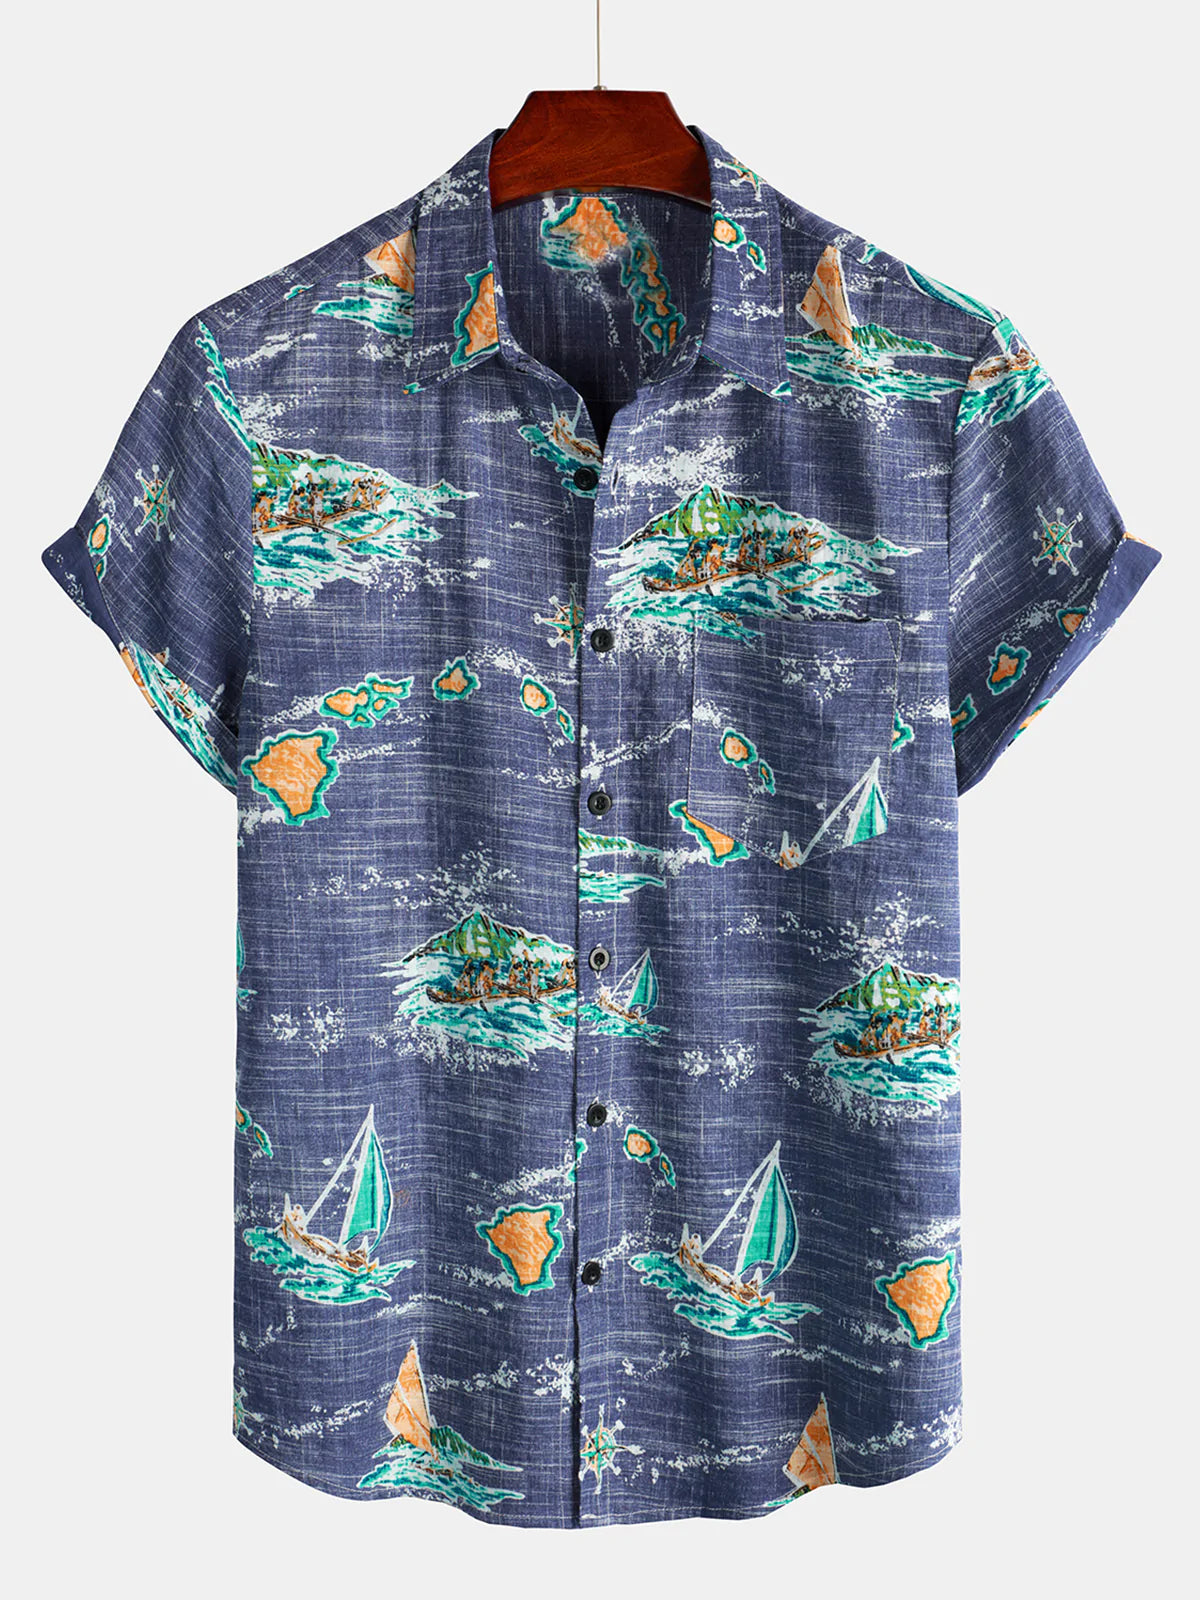 Men's Cotton Navy Blue Hawaiian Islands Cruise Beach Button Up Pocket Summer Short Sleeve Aloha Shirt